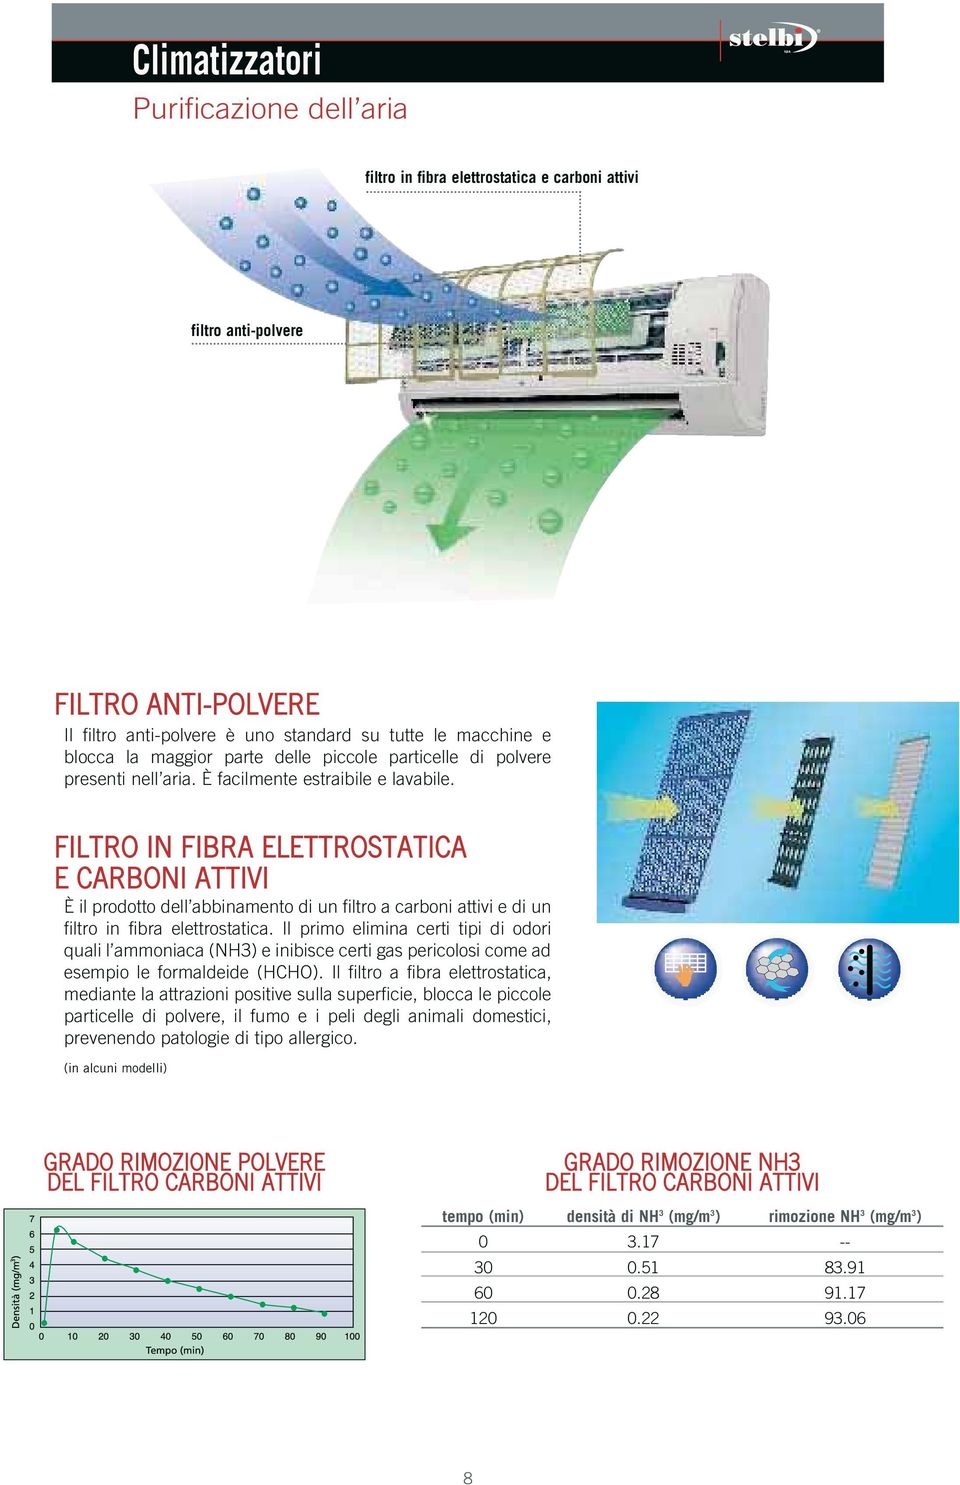 FILTRO IN FIBRA ELETTROSTATIA E ARBONI ATTIVI È il prodotto dell abbinamento di un filtro a carboni attivi e di un filtro in fibra elettrostatica.